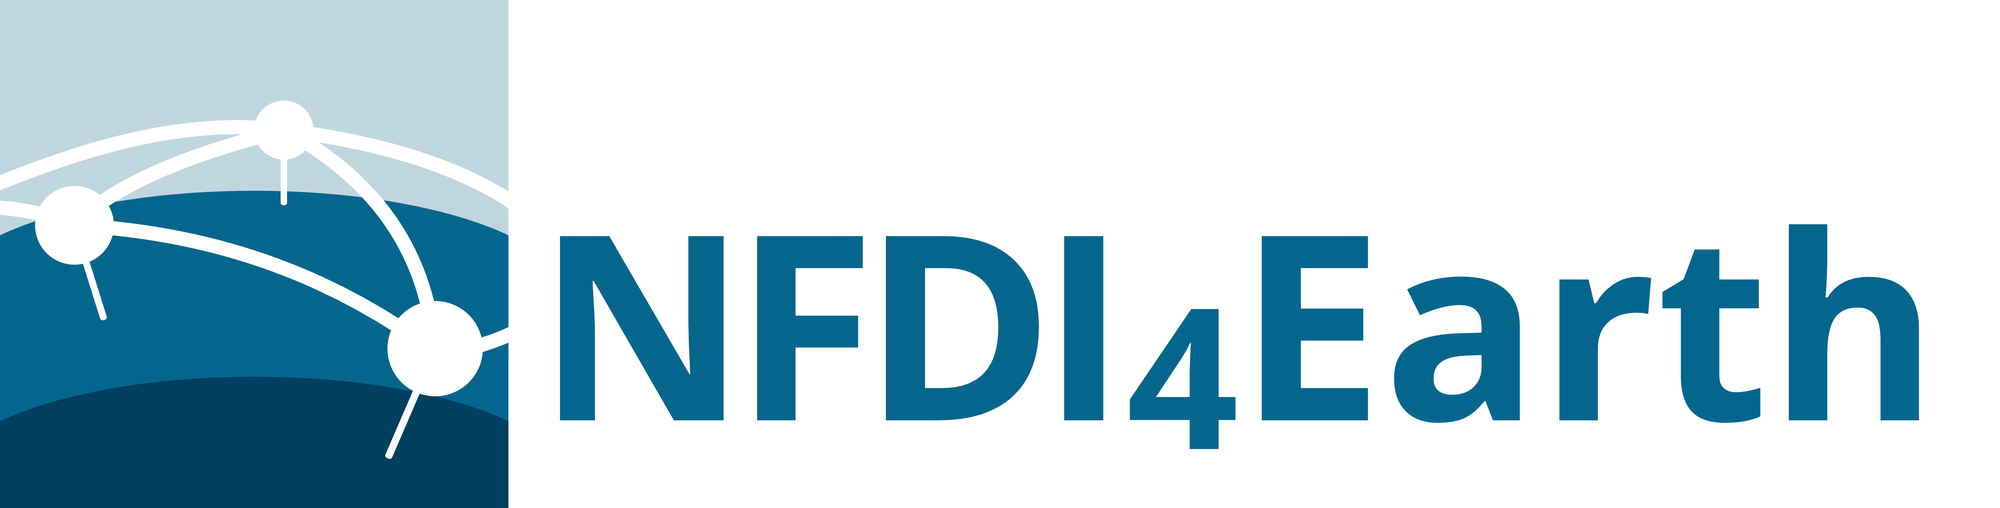 nfdi4earth_logo